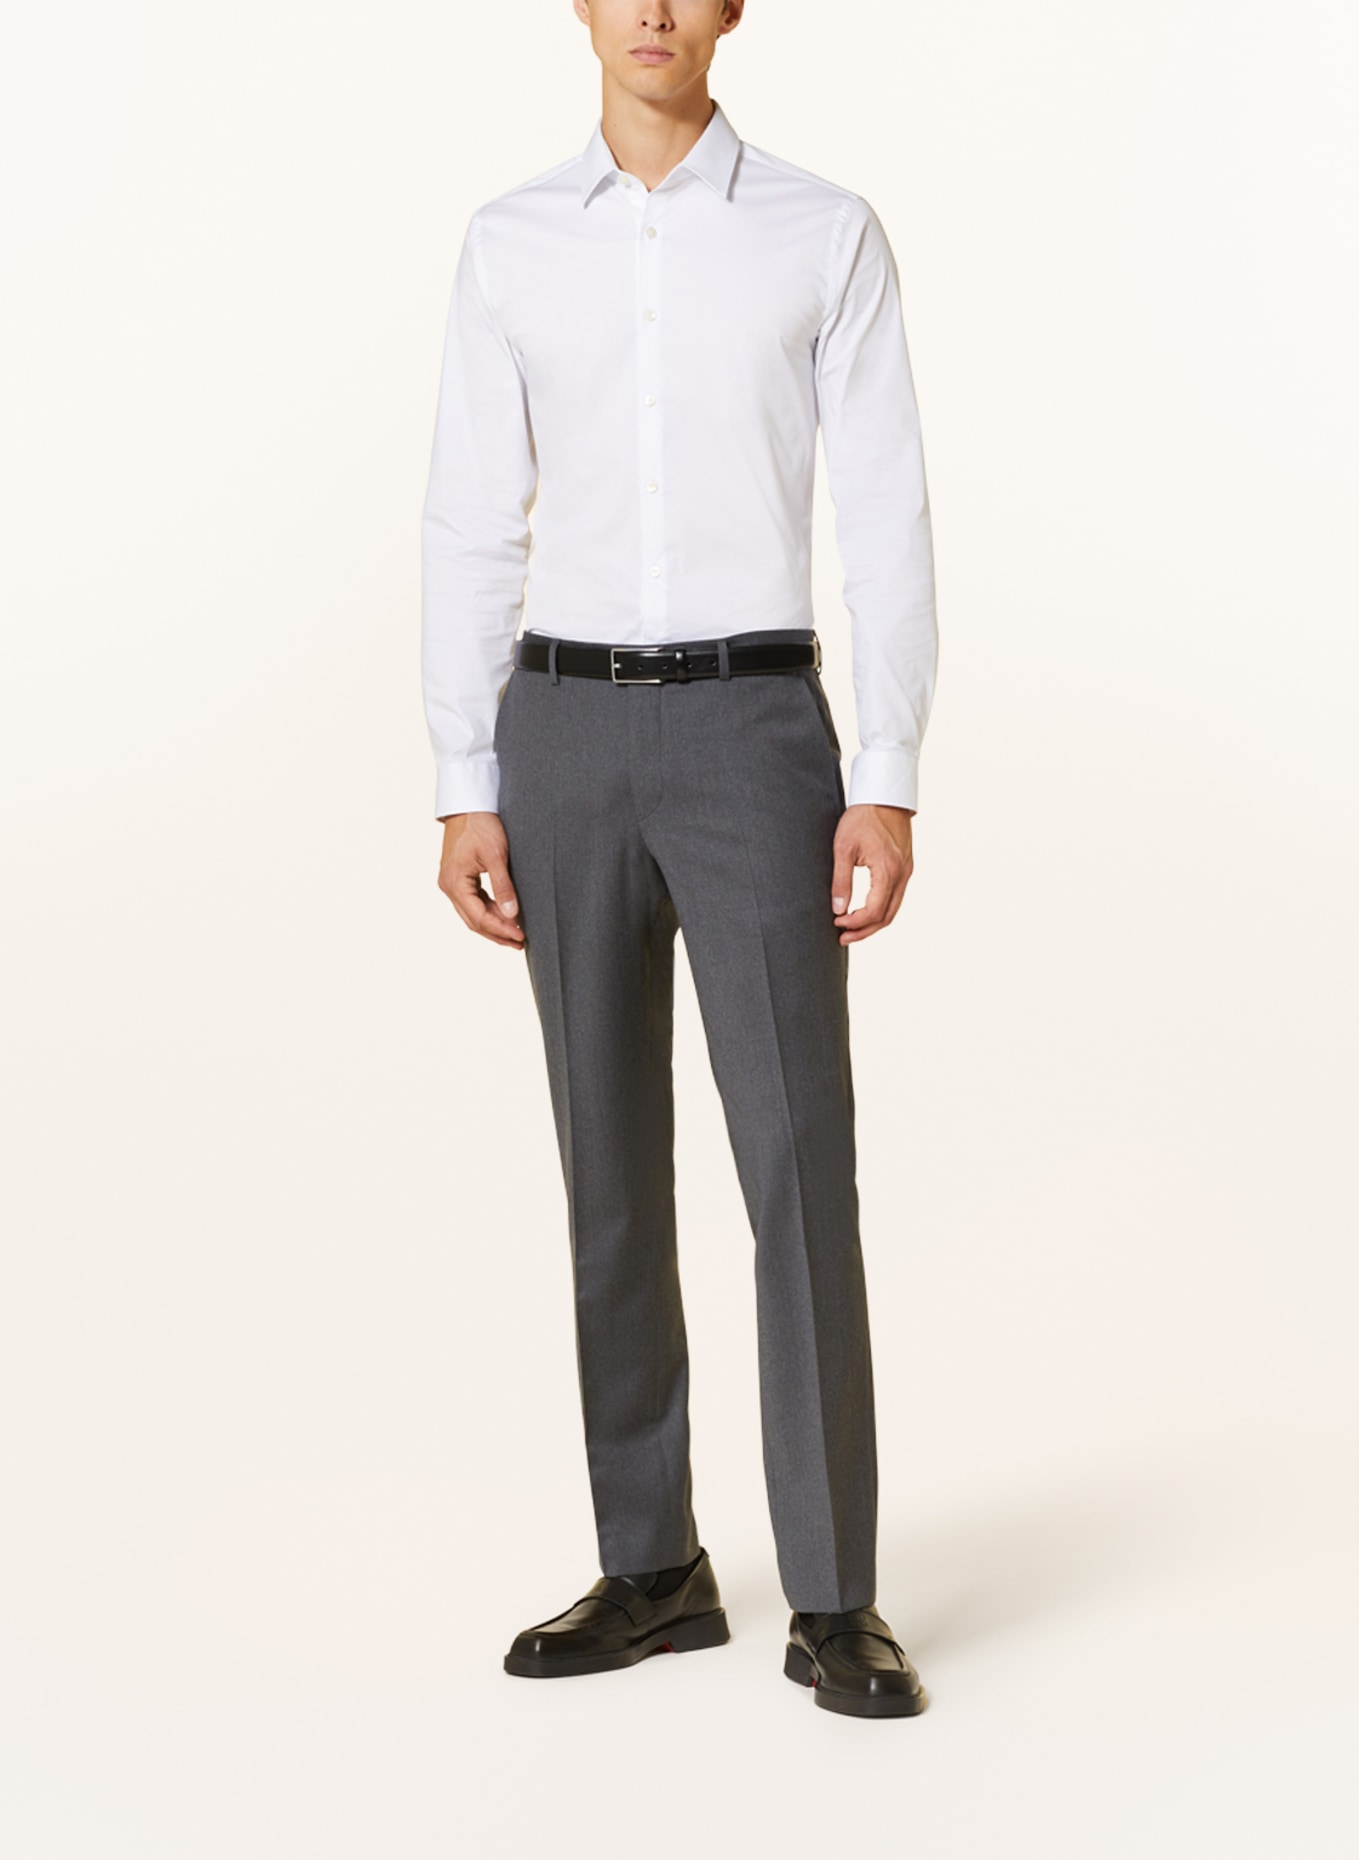 SAND COPENHAGEN Suit trousers CRAIG modern fit, Color: 170 Light Grey (Image 3)